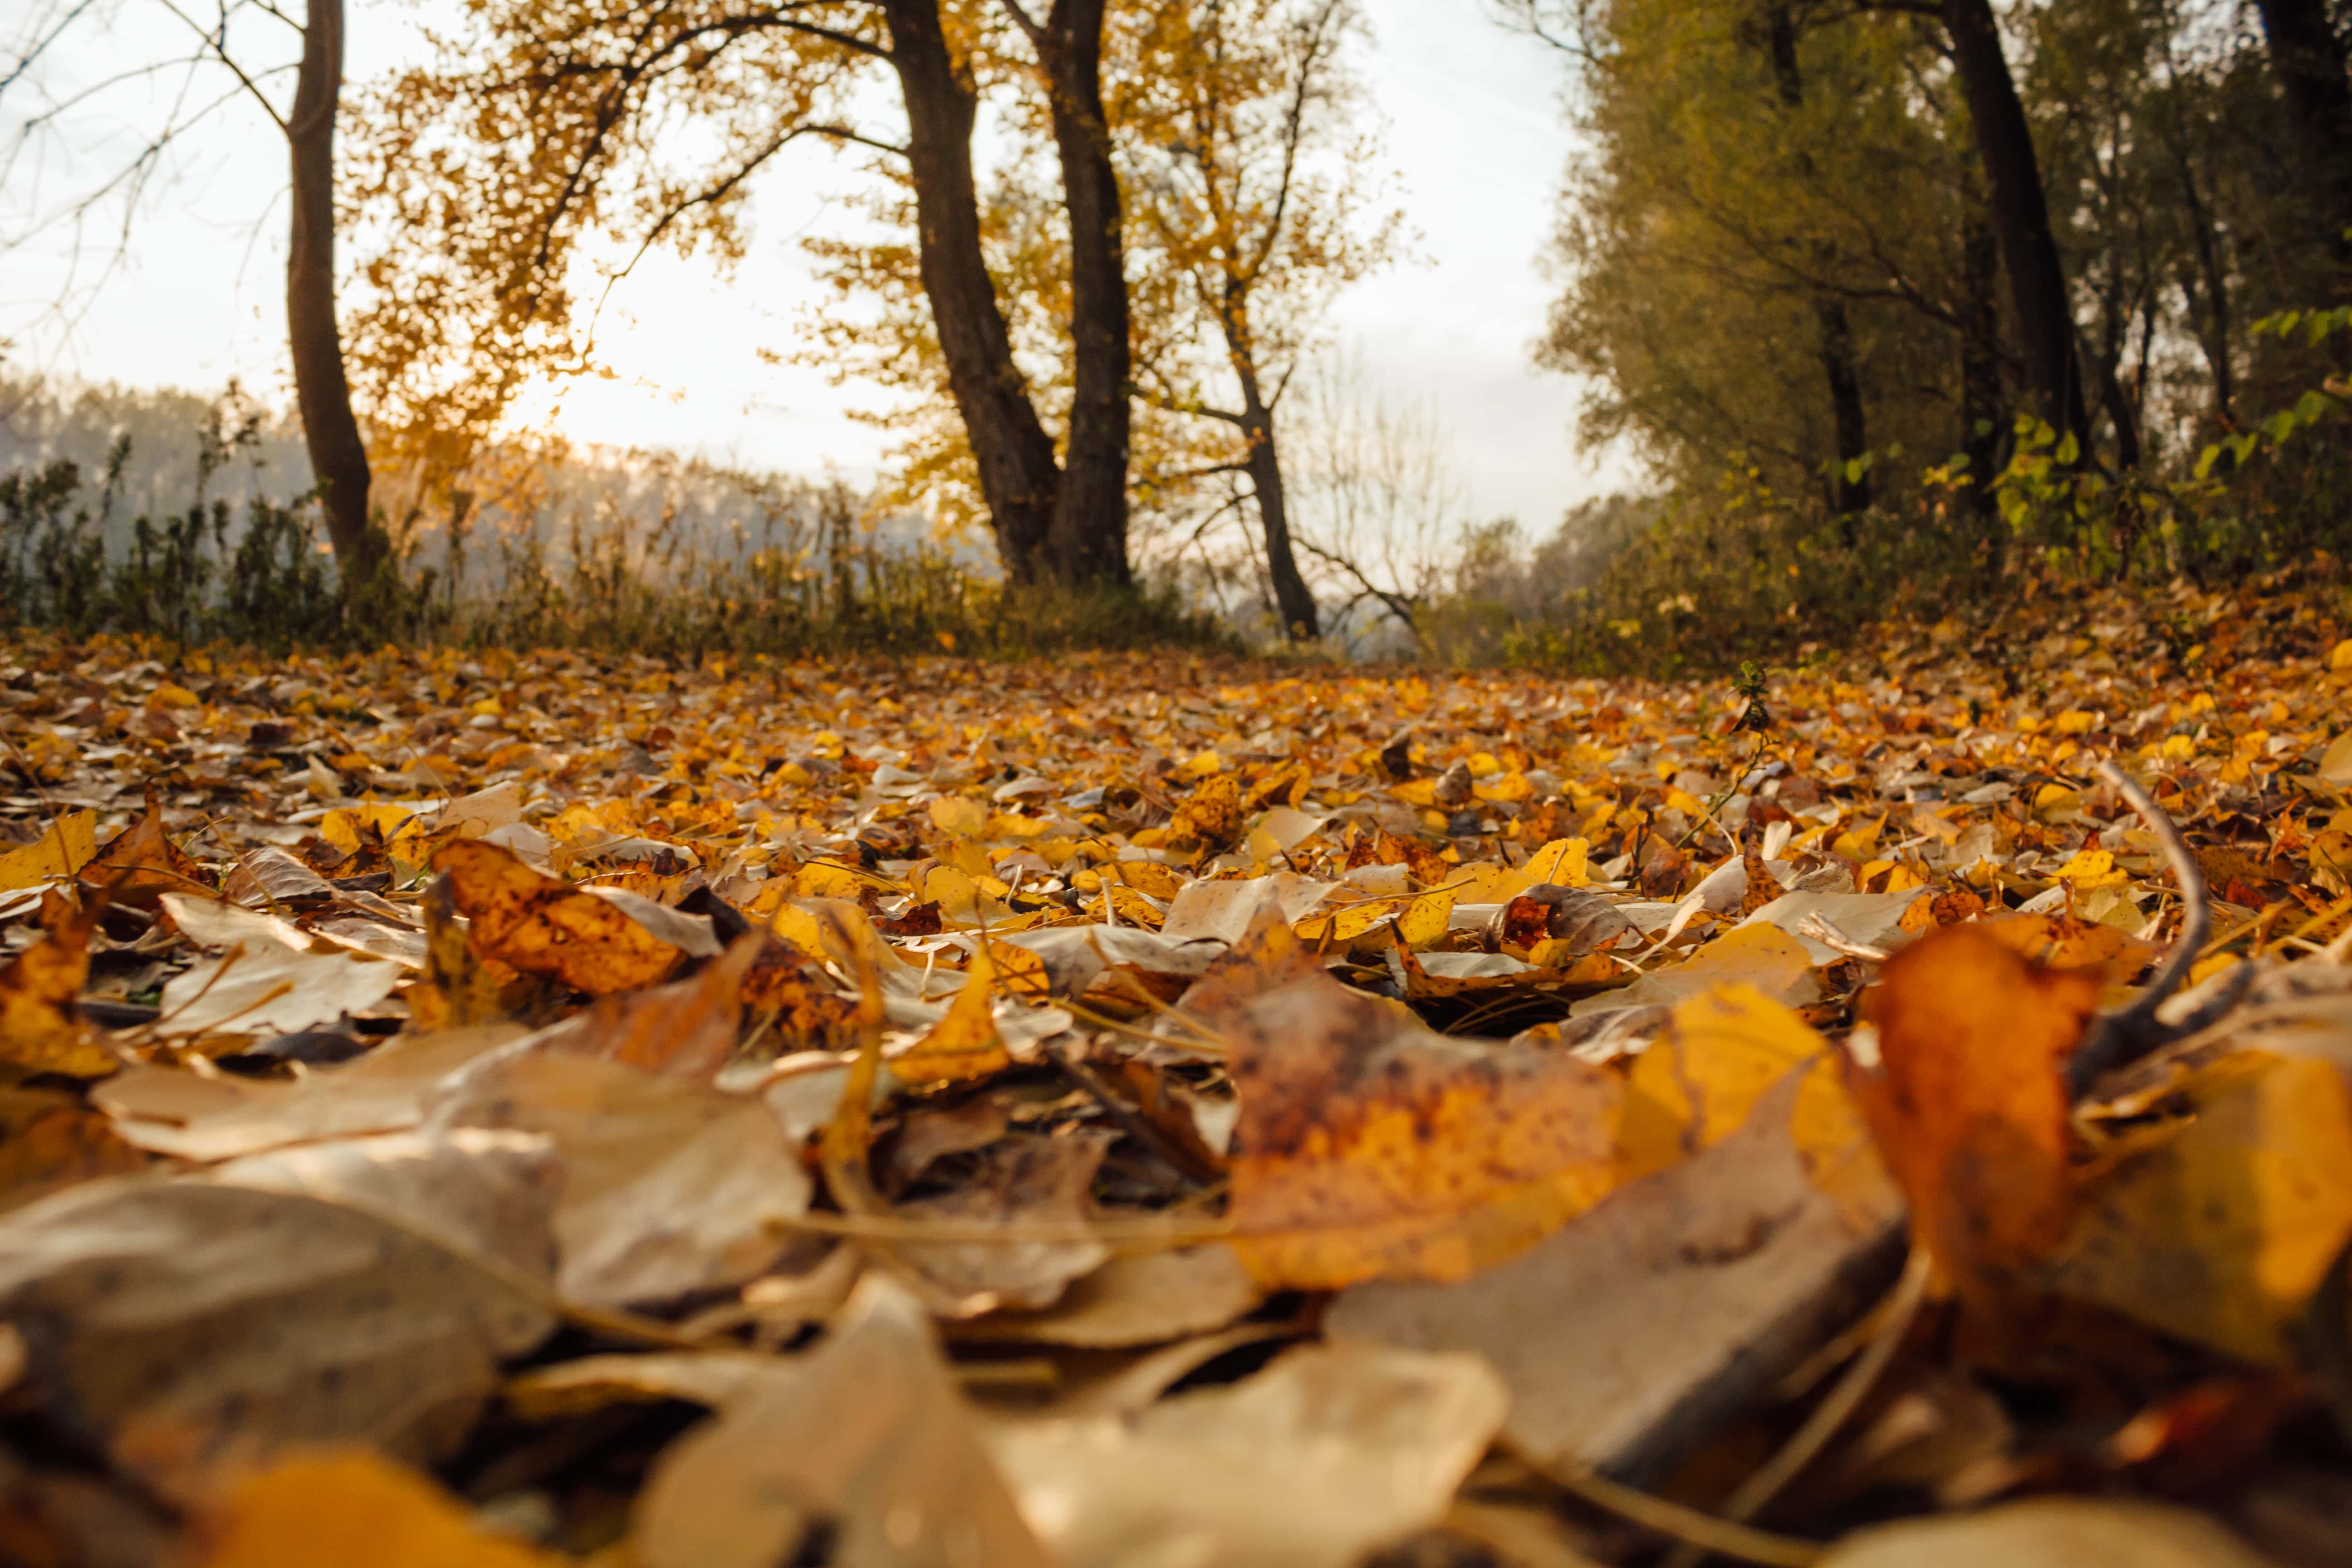 Бесплатное изображение: осенний сезон, Тополь, Желтые листья, осень, лист,  пейзаж, дерево, лес, дерево, природа